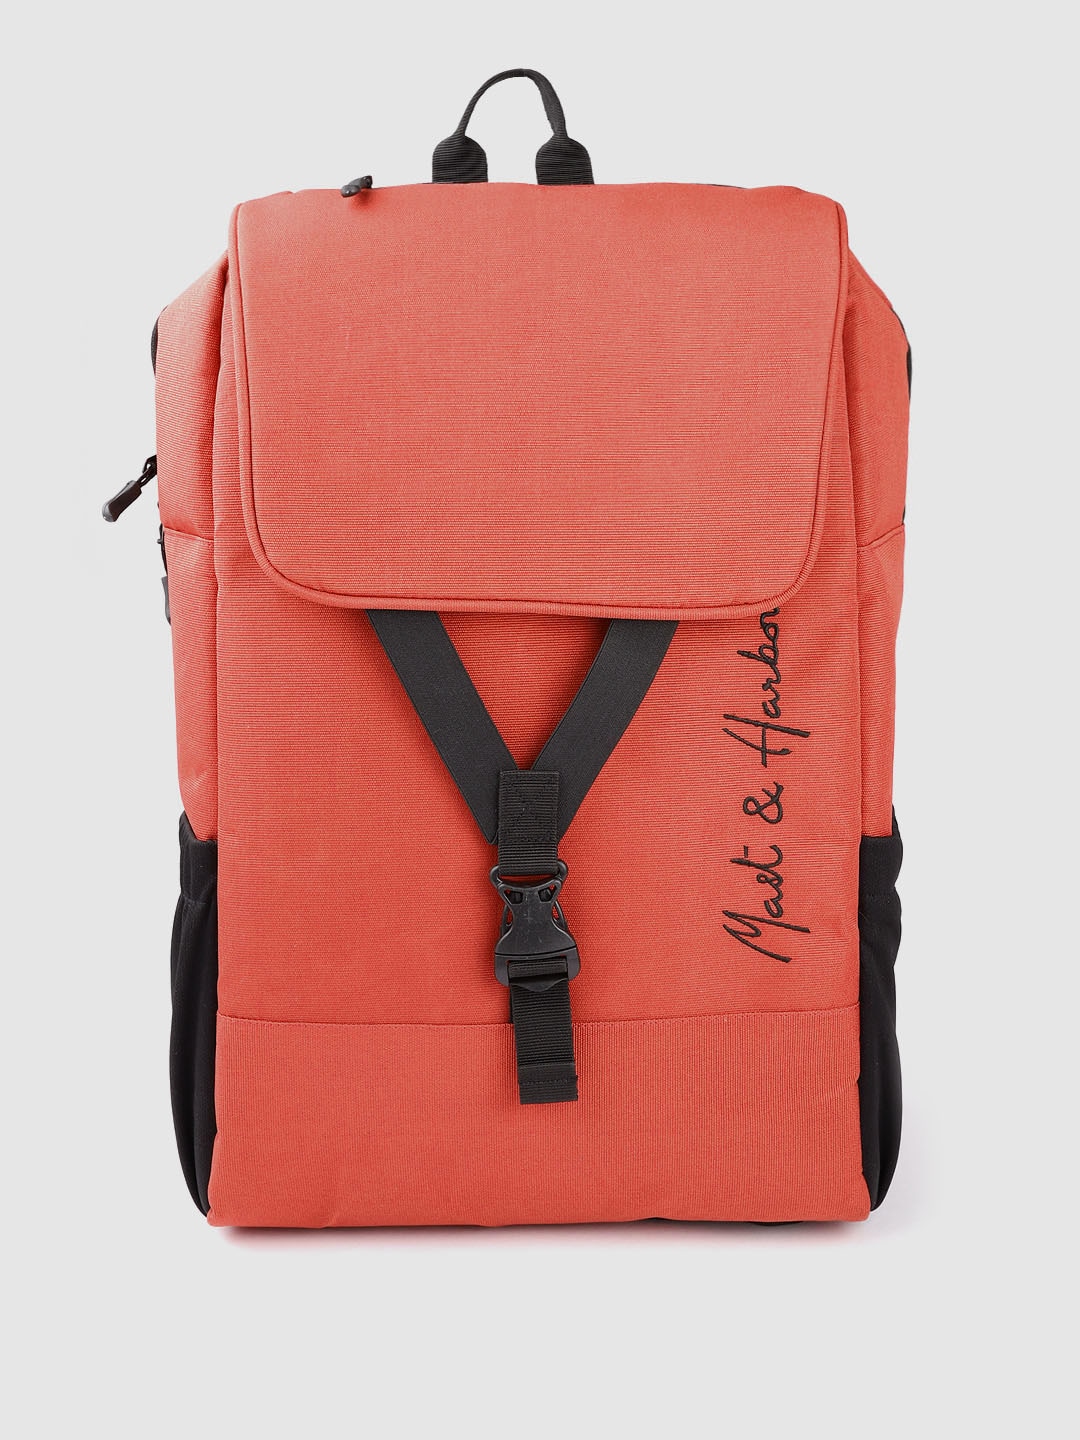 Mast & Harbour Unisex Rust Orange Solid Backpack 21.1 L Price in India